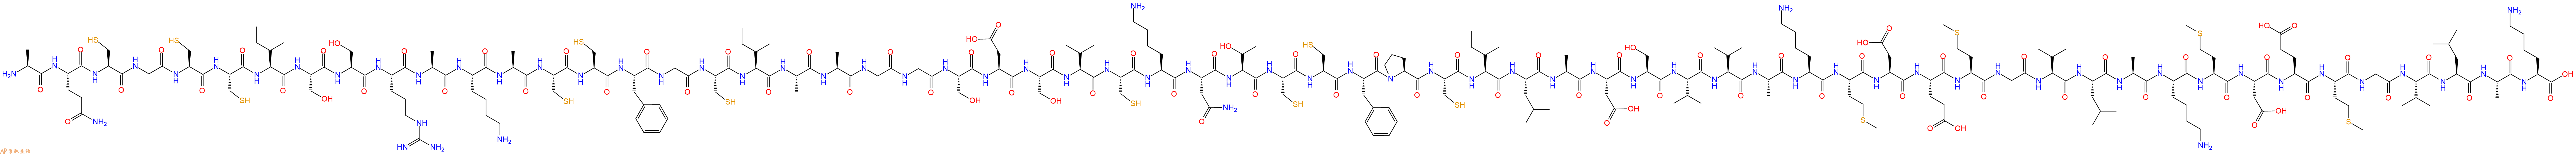 专肽生物产品Ala-Gln-Cys-Gly-Cys-Cys-Ile-Ser-Ser-Arg-Ala-Lys-Al